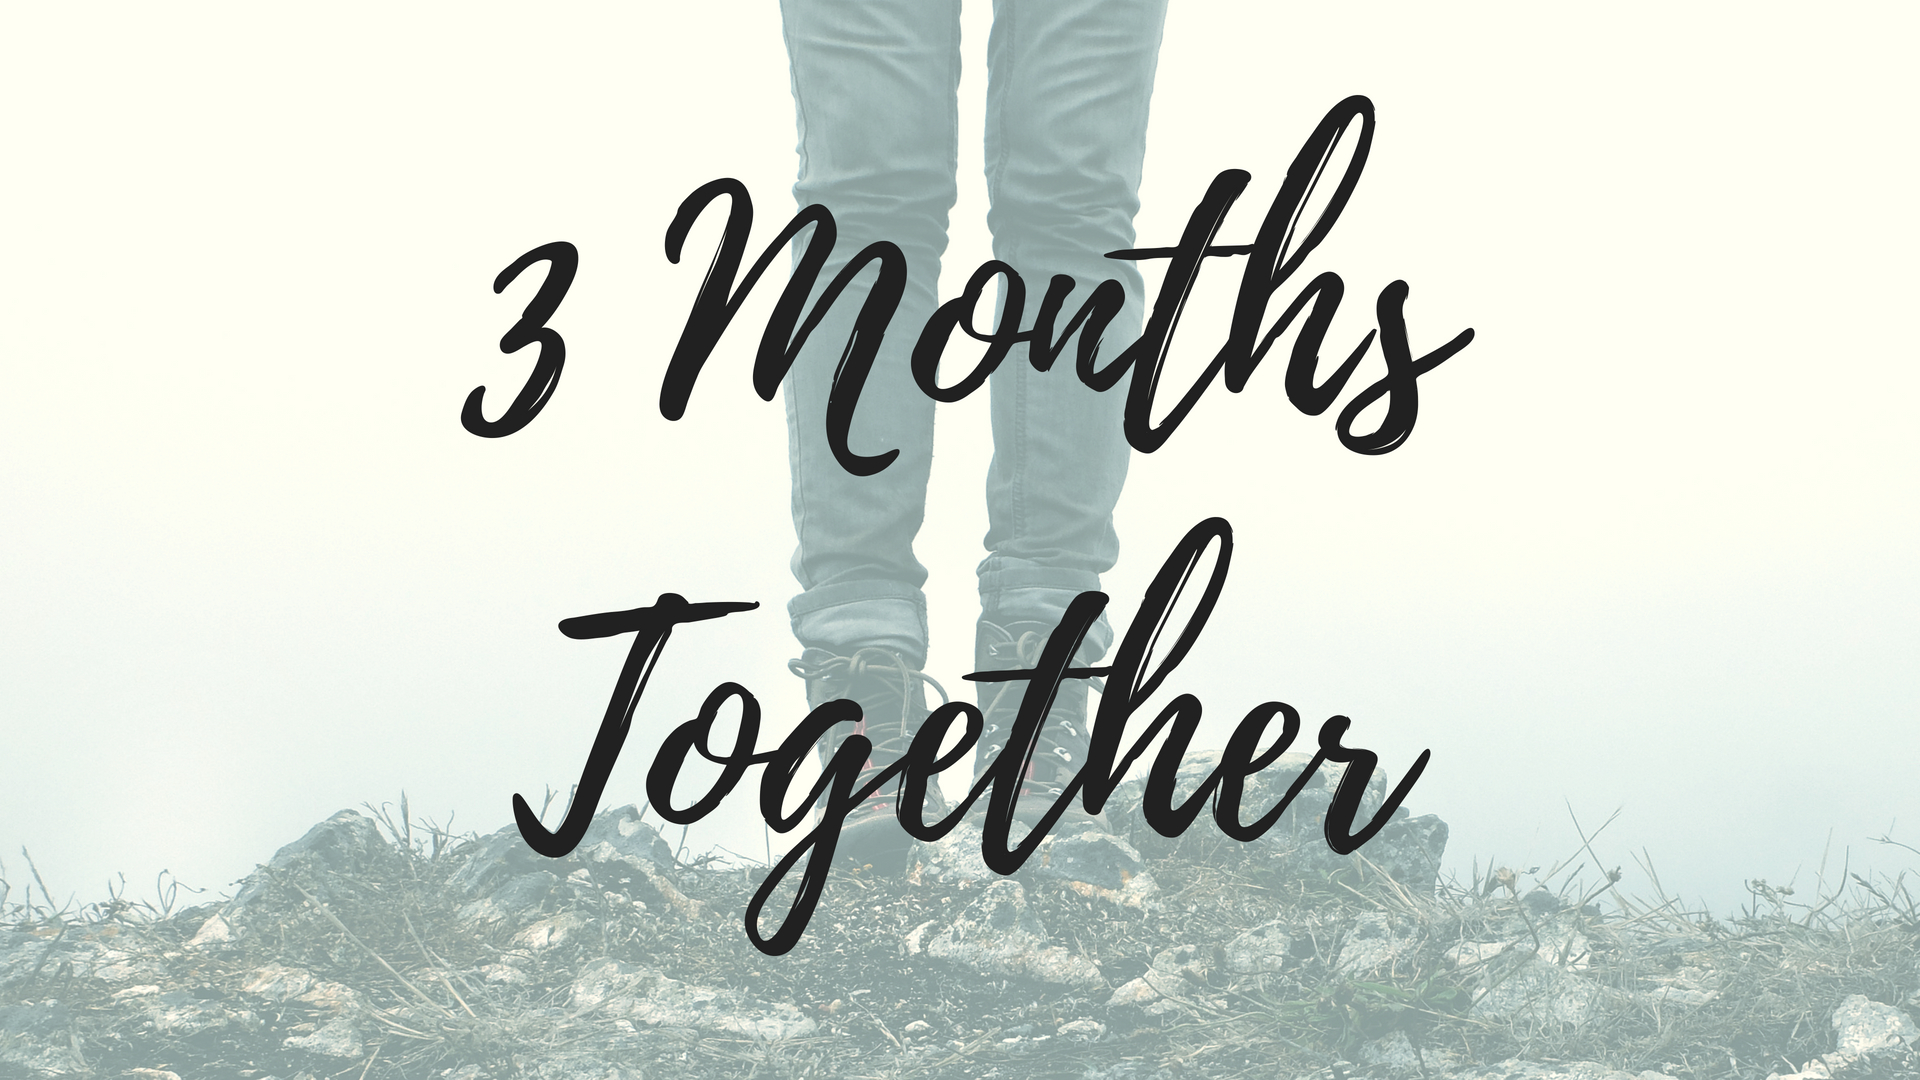 Months earlier. 6 Months together. 3 Months together. 1 Month together. One month together.